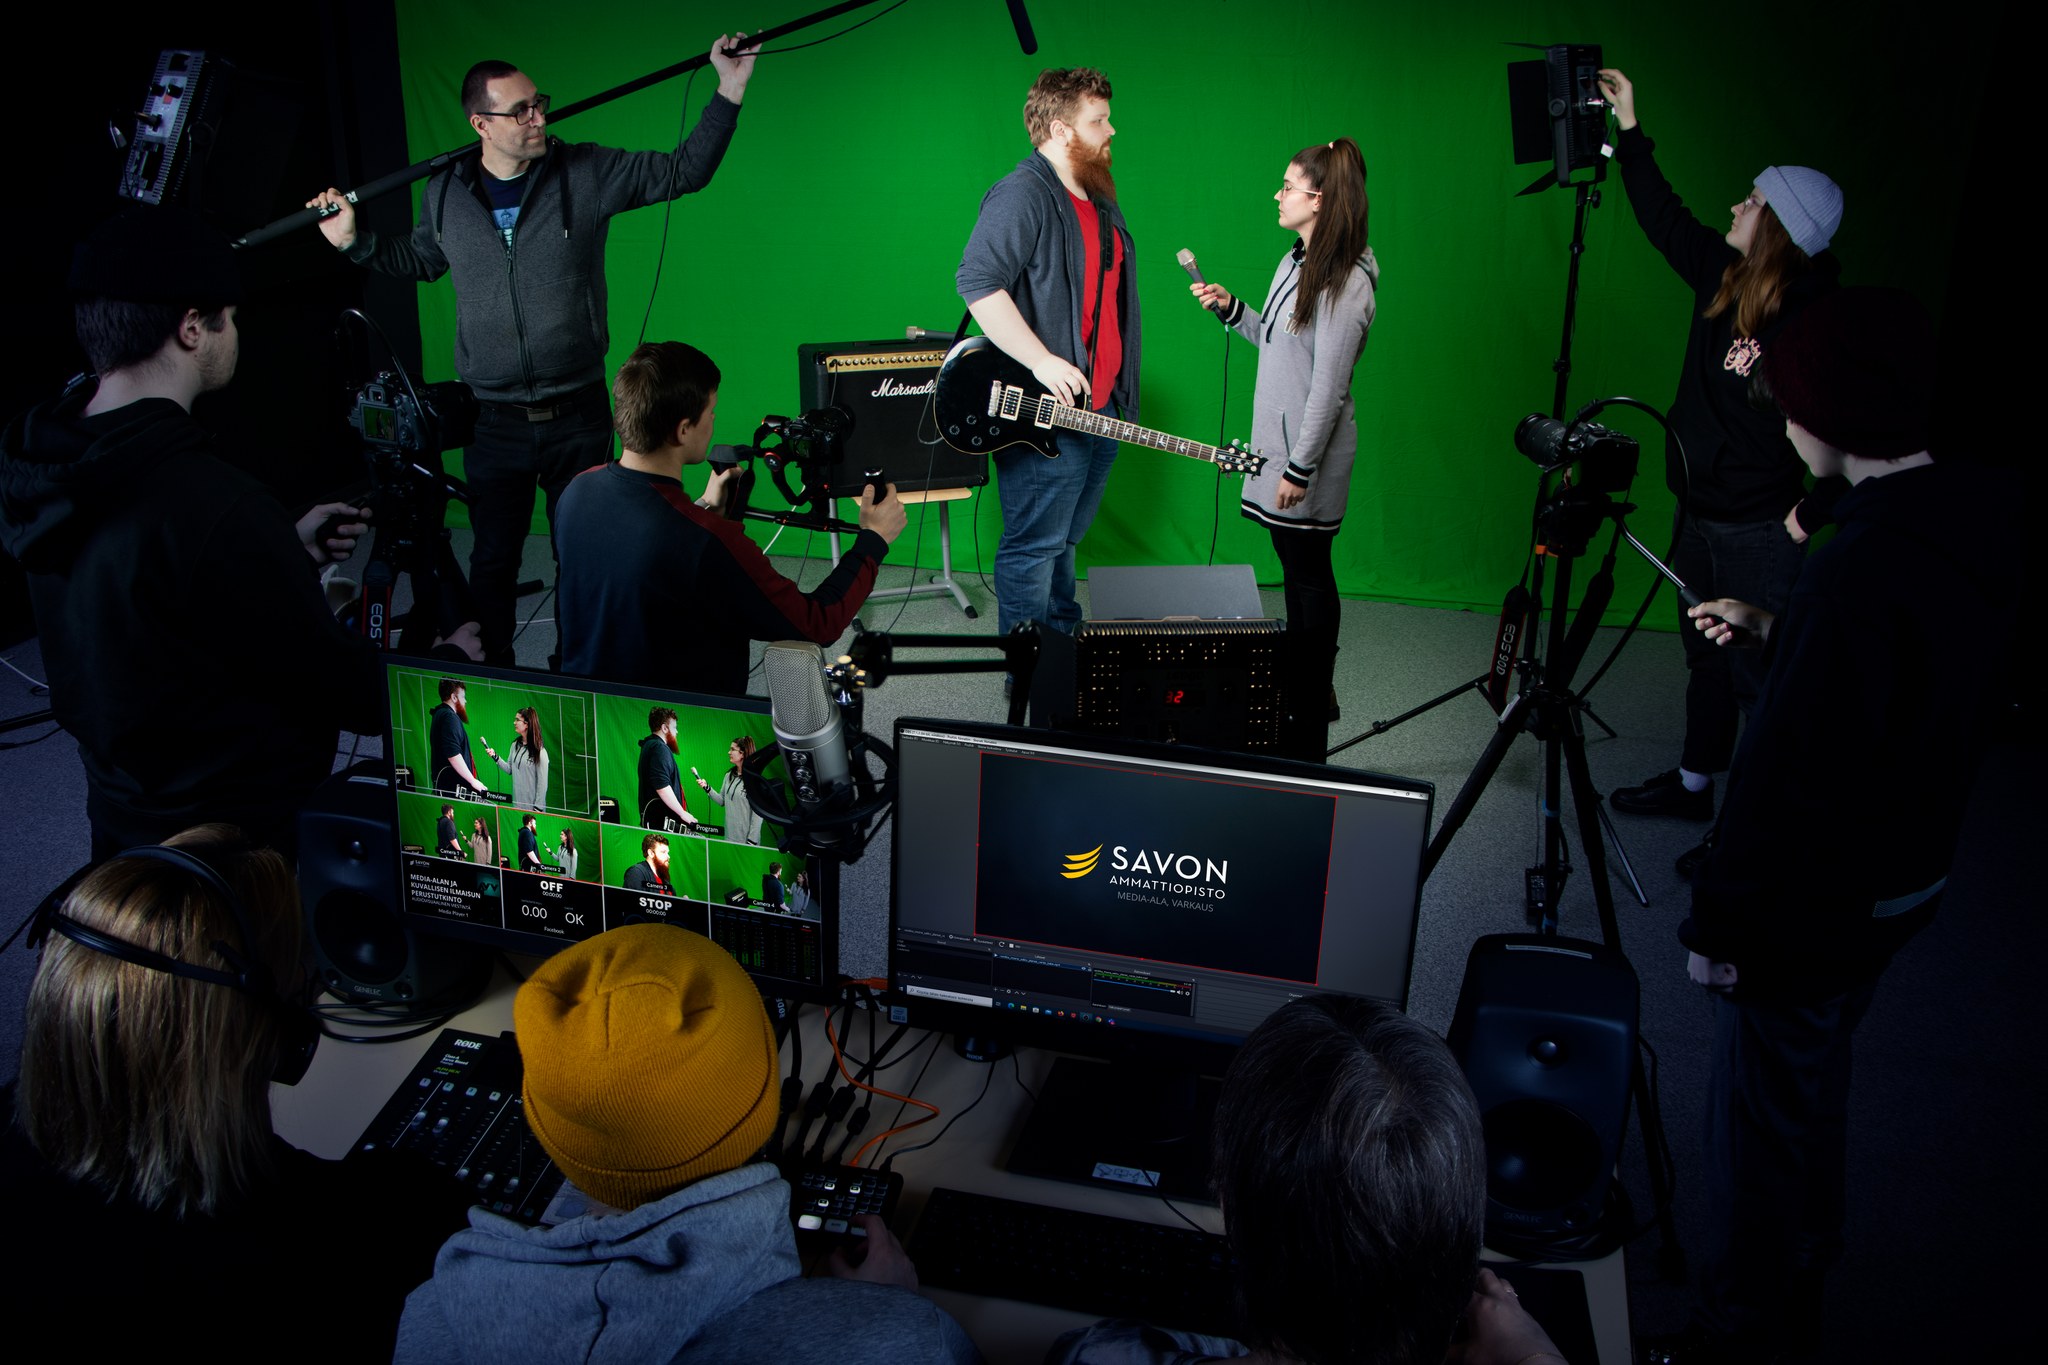 Behind the scene -kuva, jossa vihreää kangasta vasten on haastattelutilanne ja taustalla on valo- ja äänimiehet ja edessä kamerat.